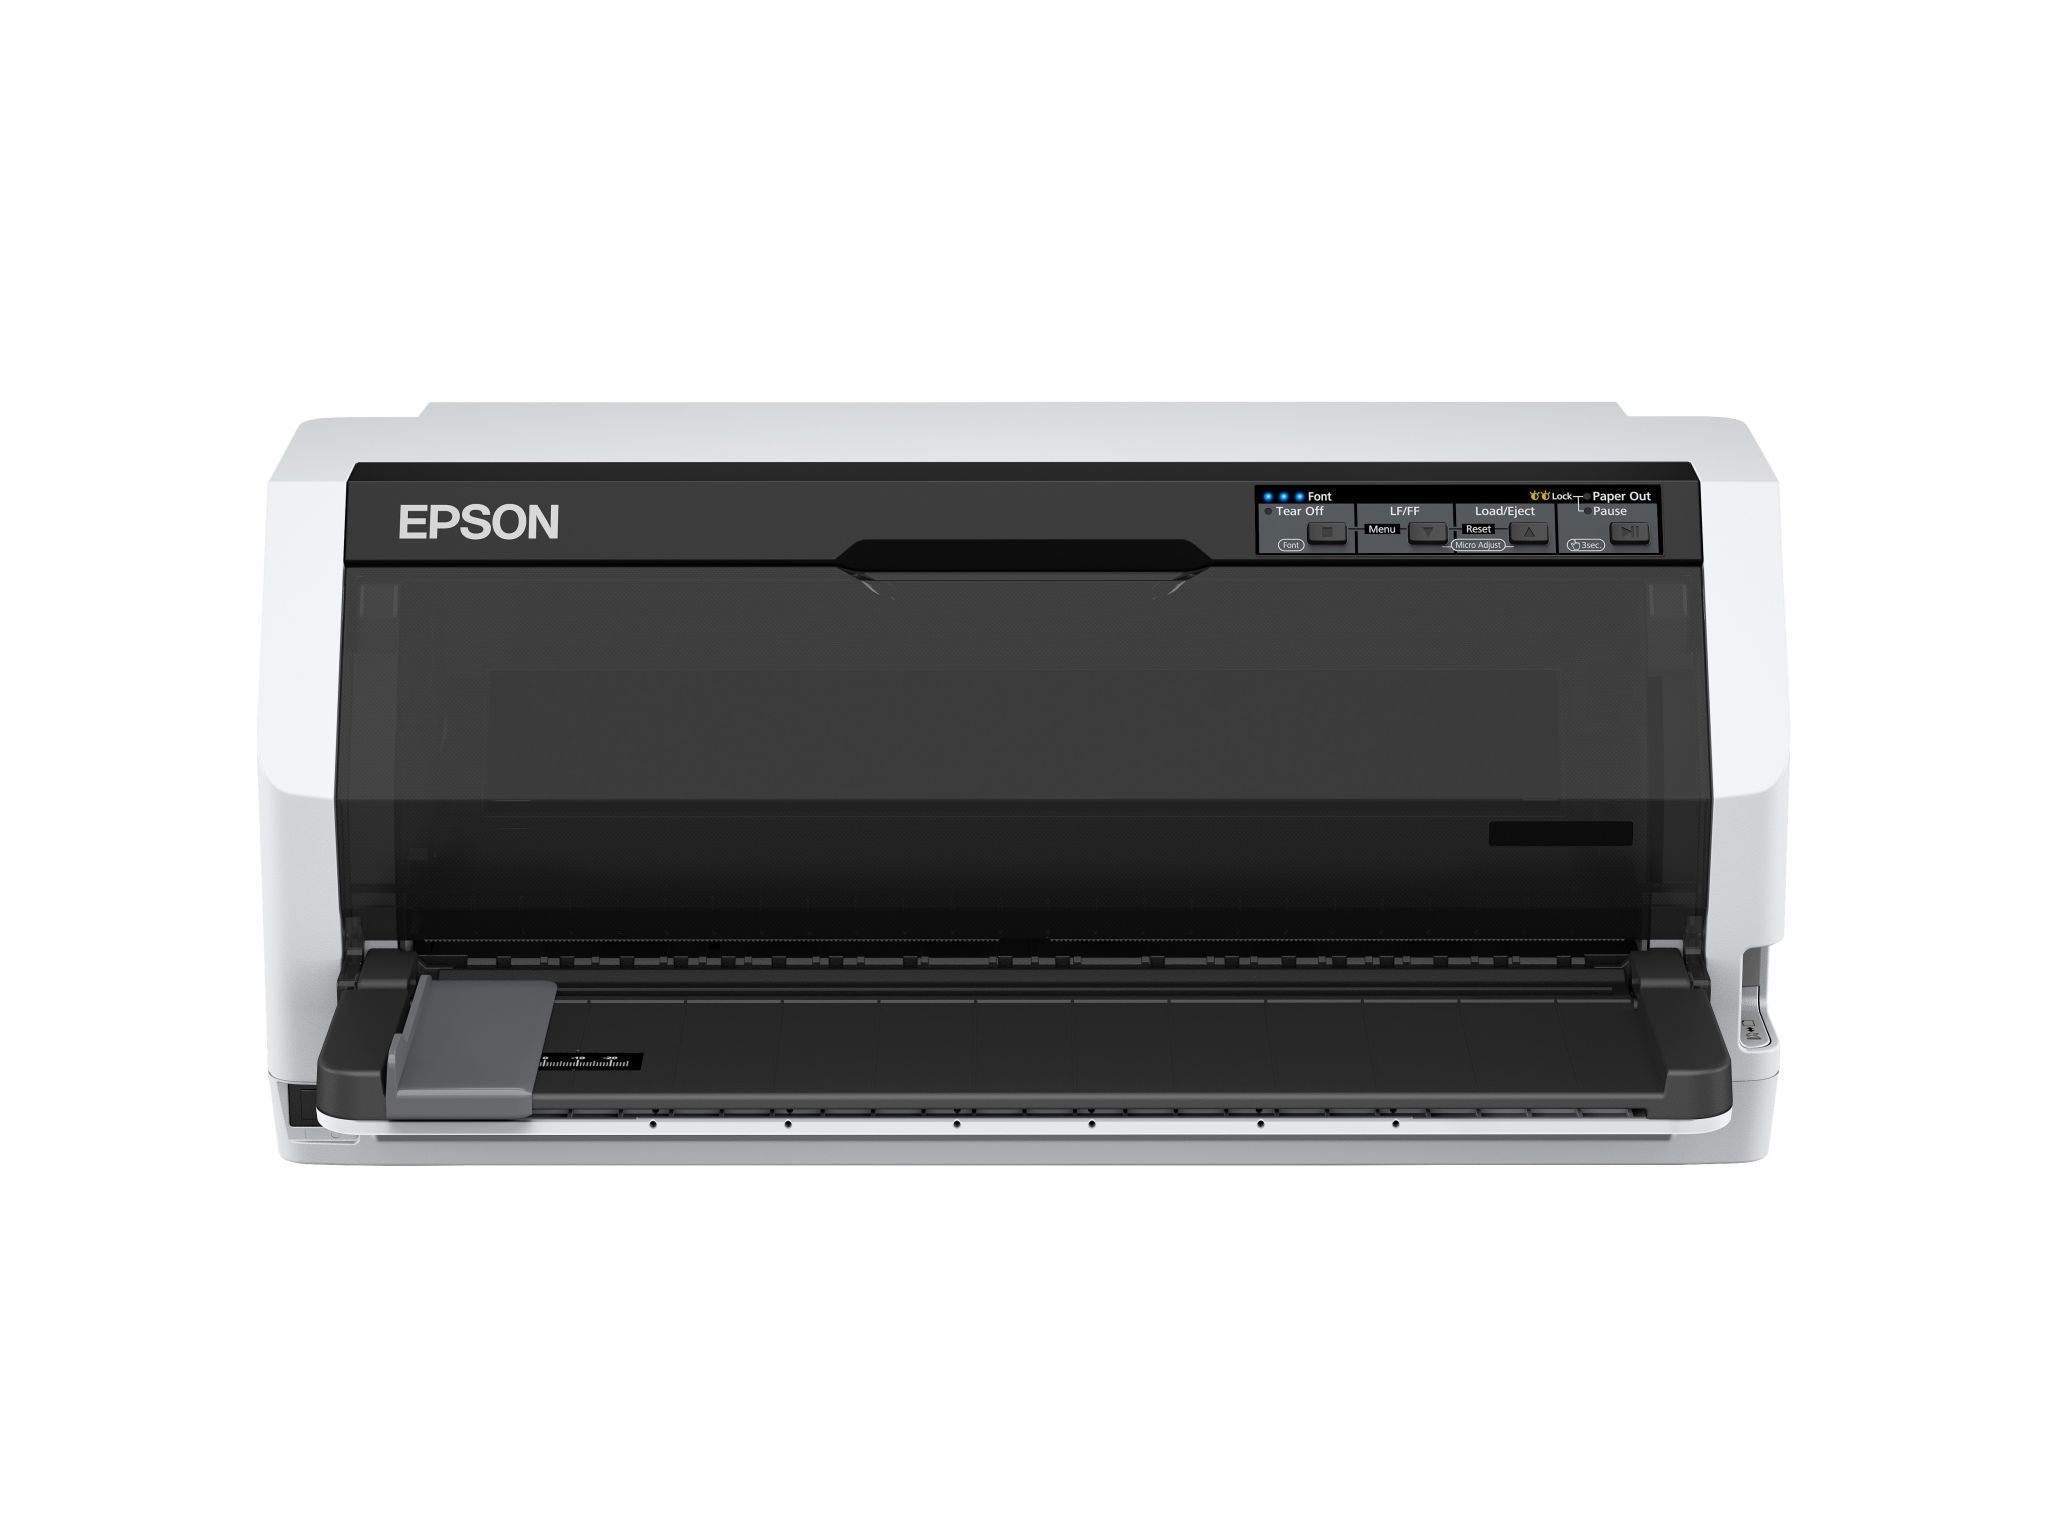 Epson LQ-780 imprimante matricielle (à points) 360 x 180 DPI 487 caractères par seconde Epson